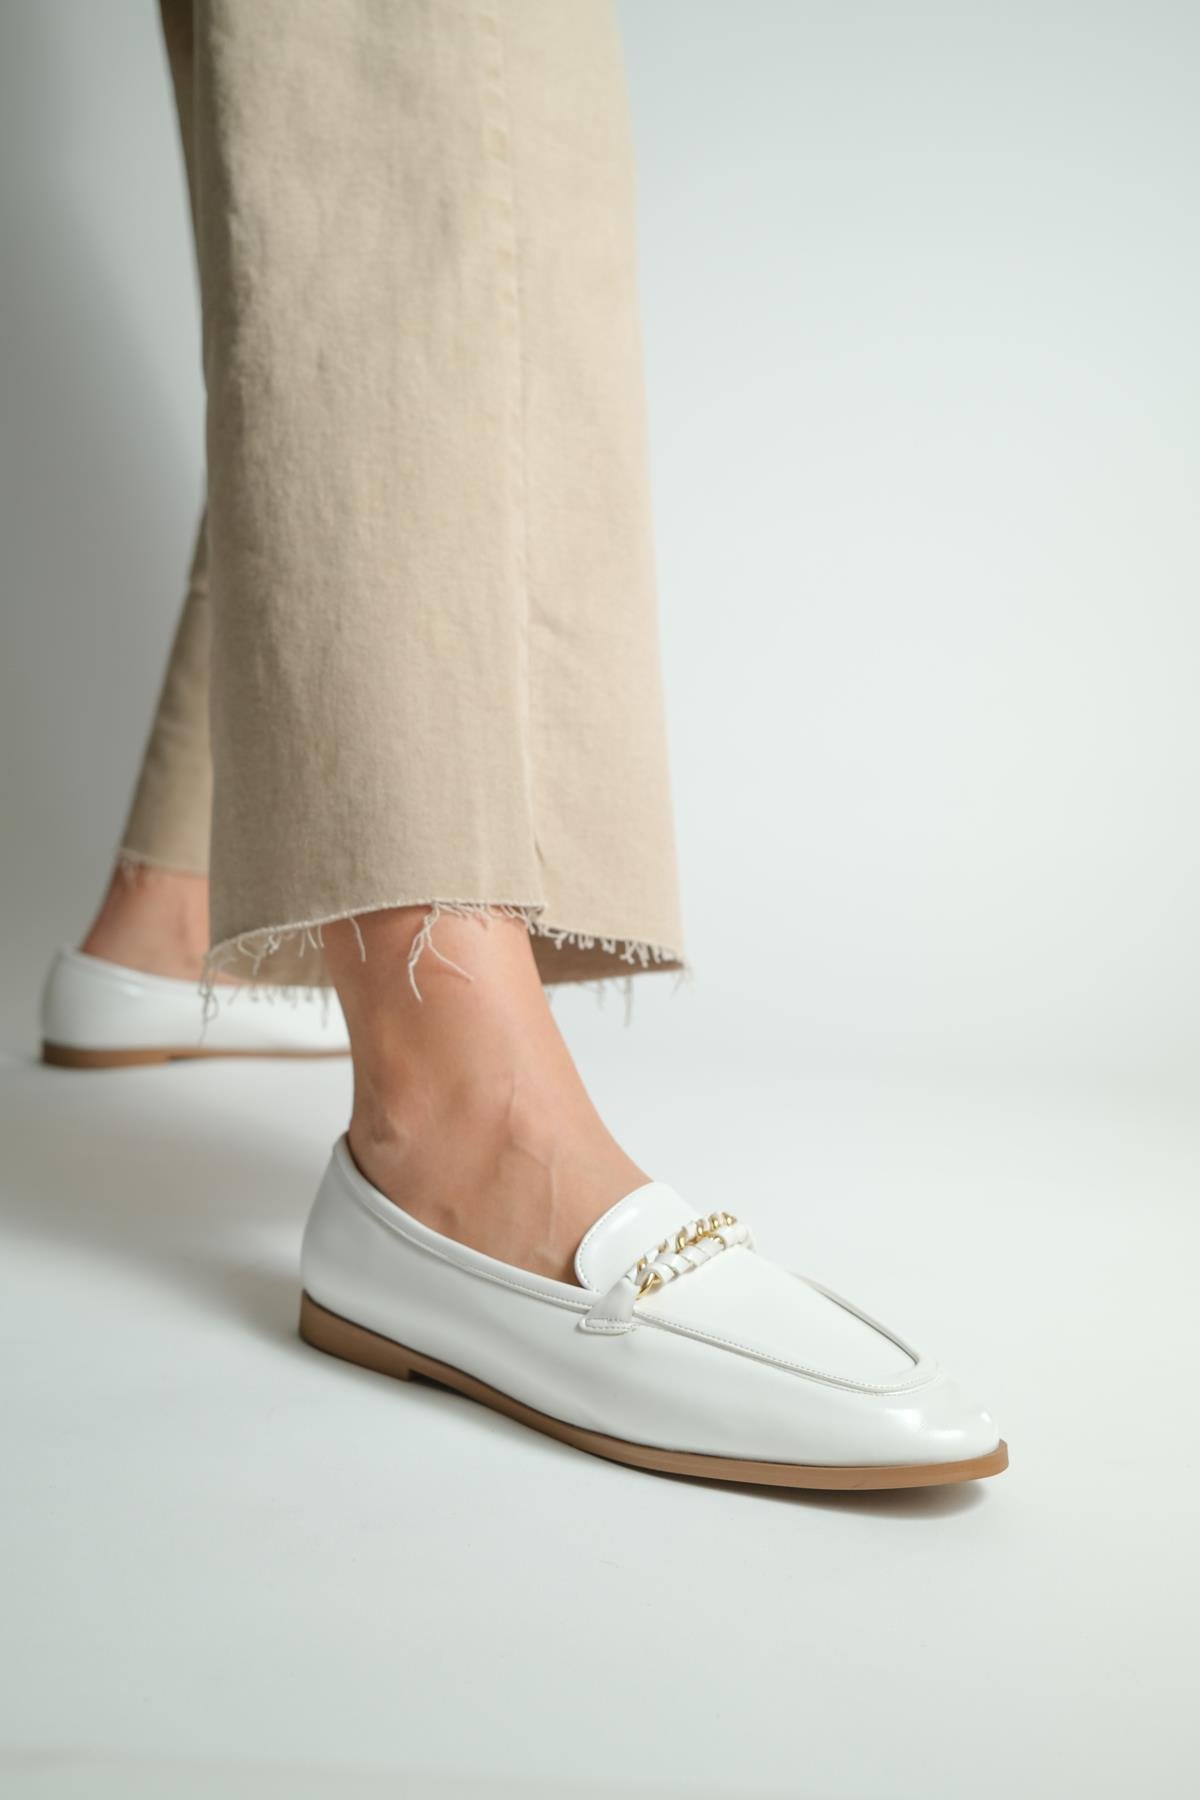 Danila Beyaz Parlak Deri Kadın Loafer Ayakkabı